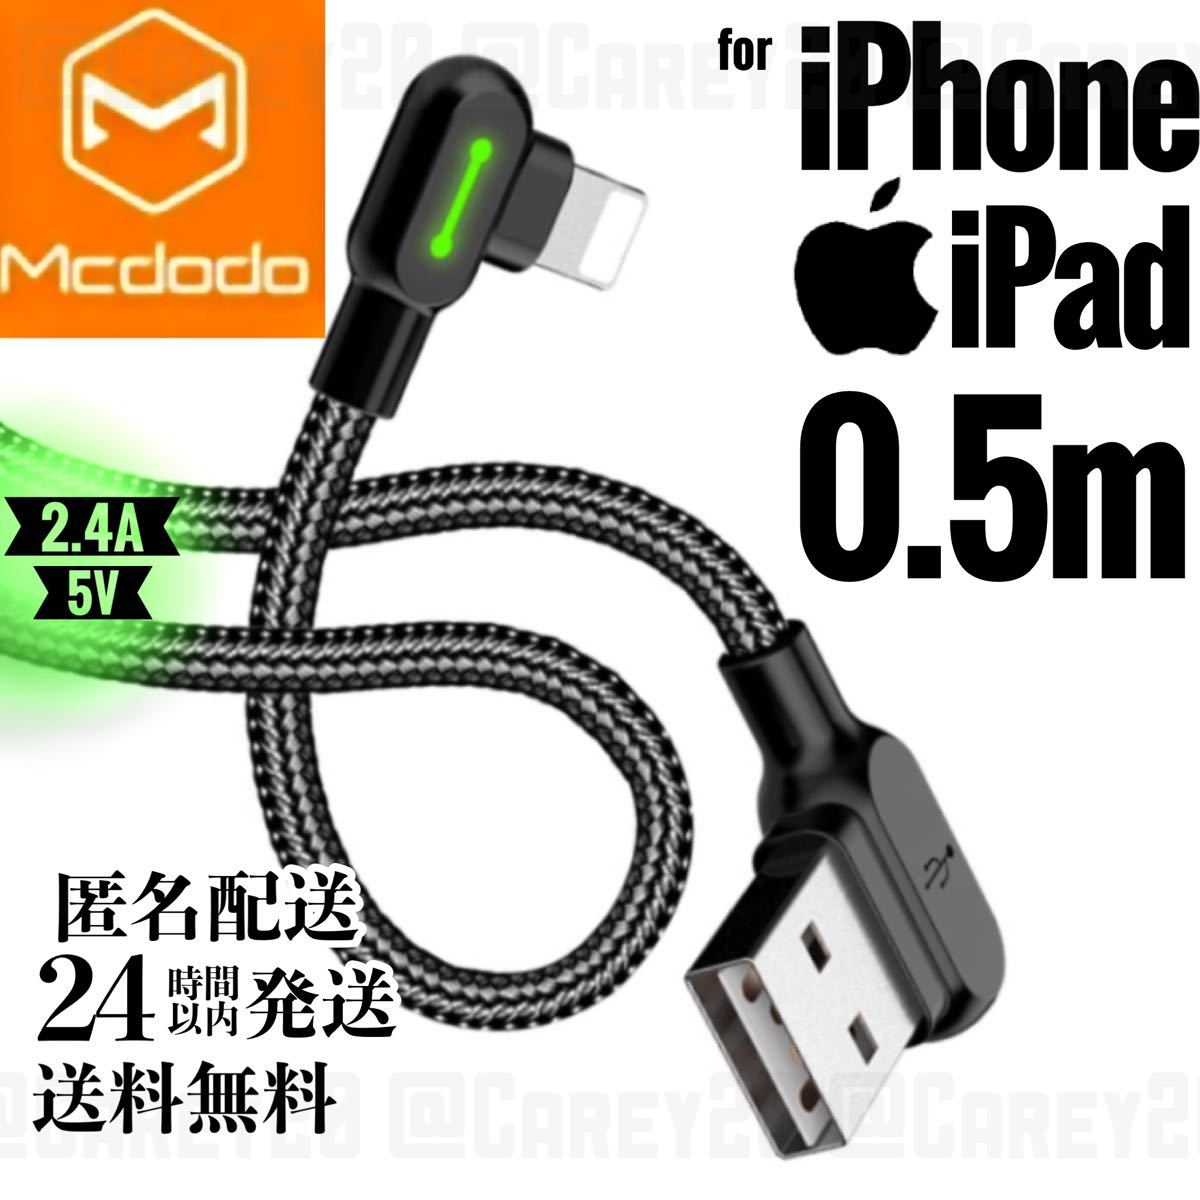 L字型 0.5m/mcdodo 充電 ケーブル ライトニングケーブル iPhone iPad 急速充電 USB データ転送 充電器